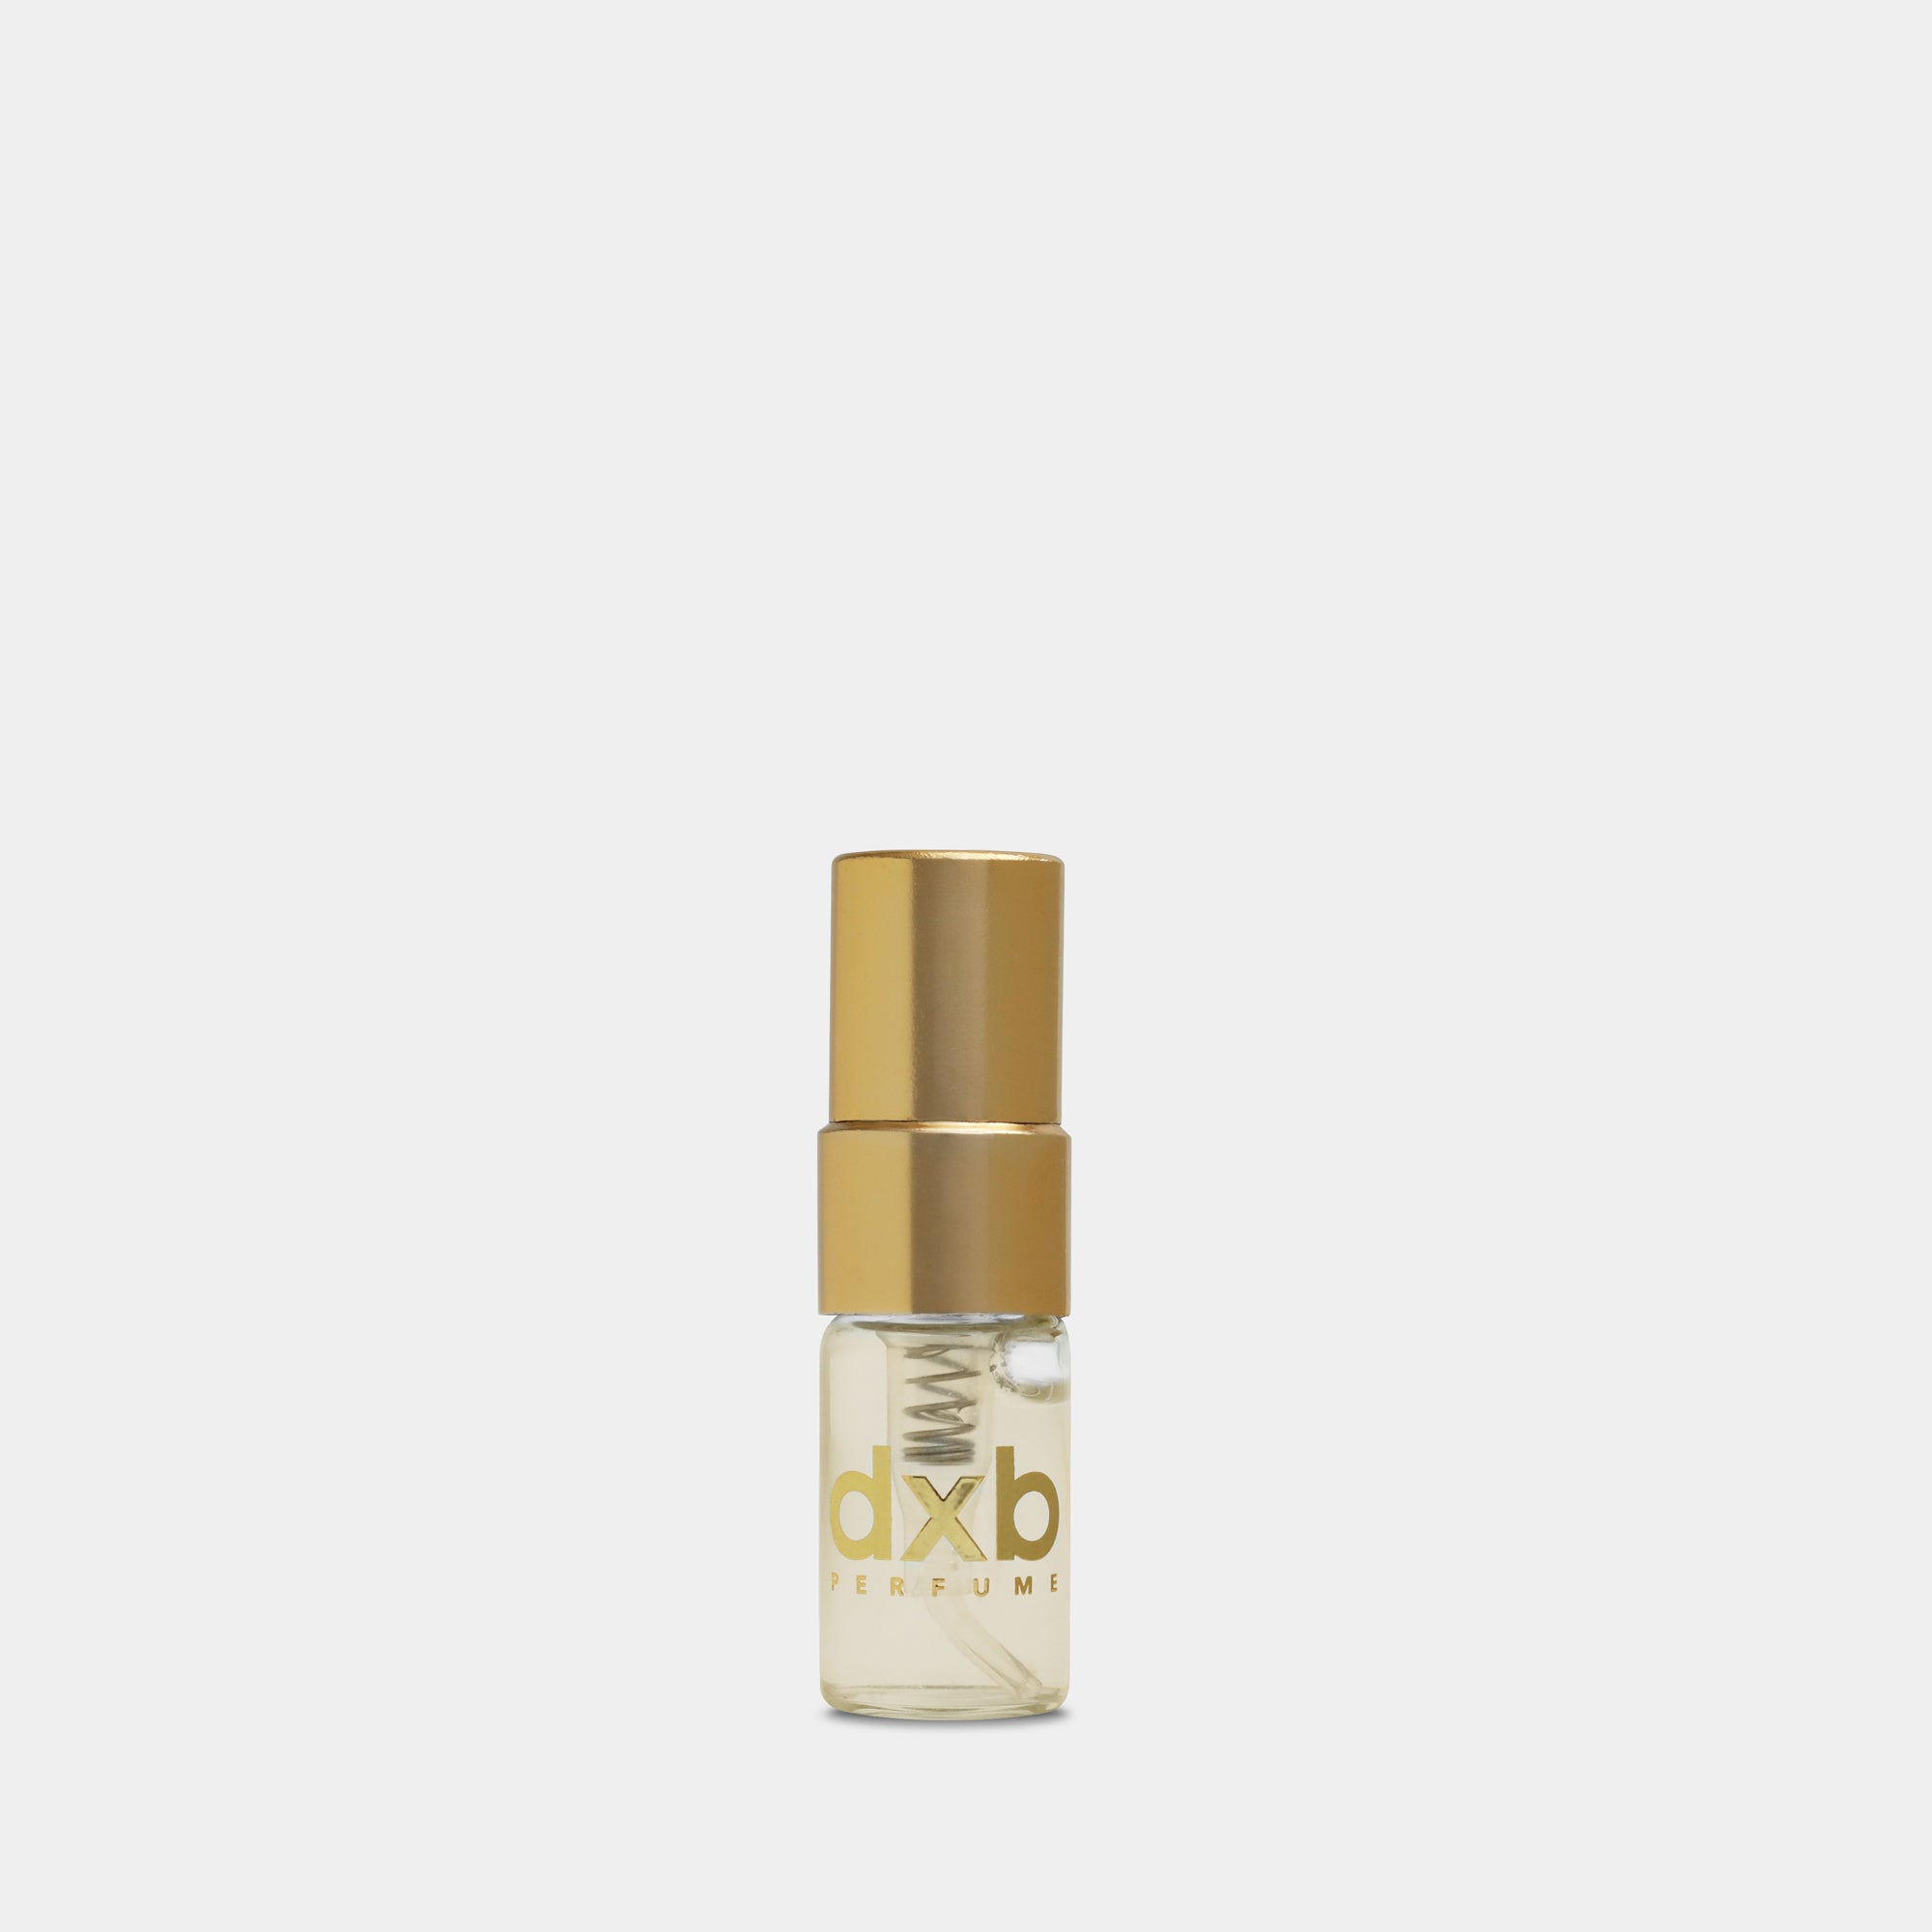 Elite Perfumery Oud Absolu sample